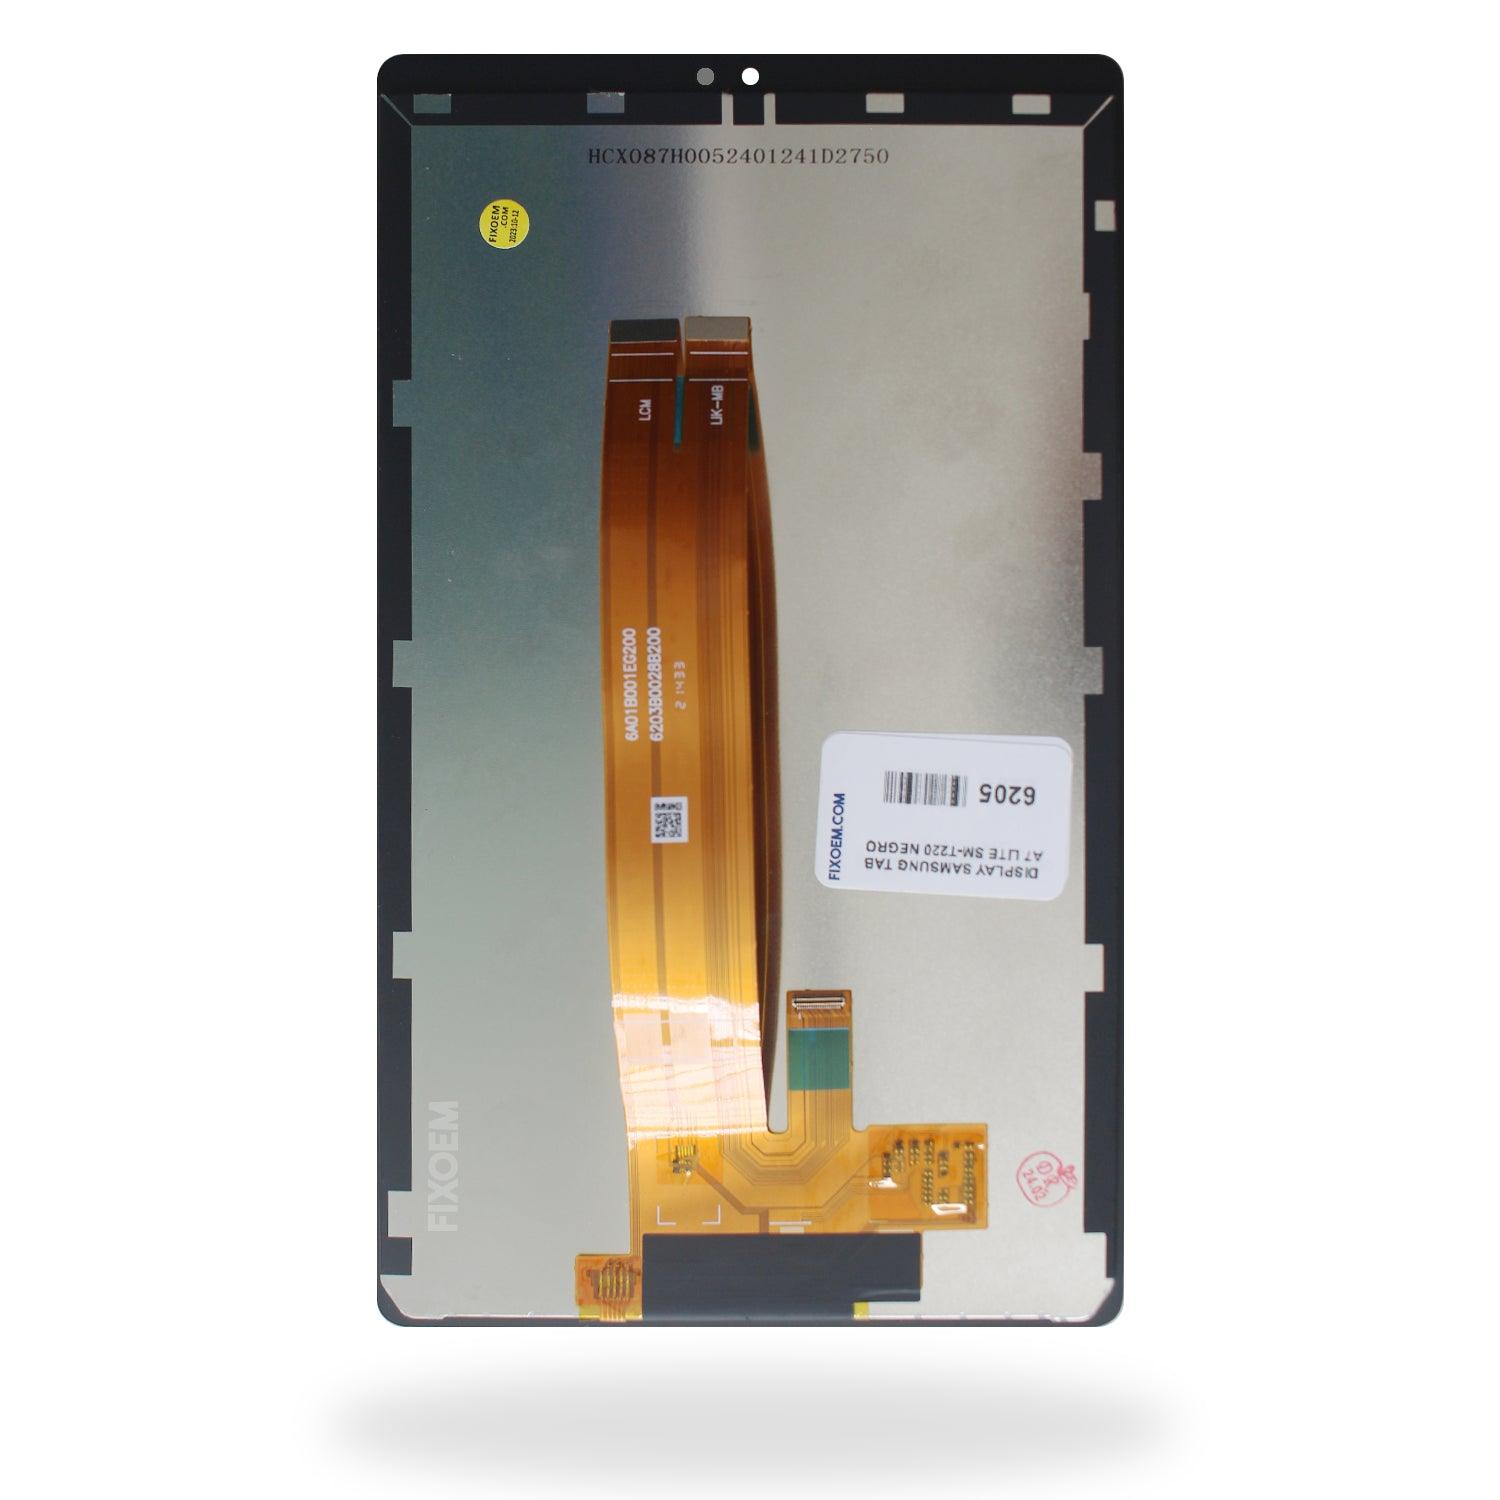 Display Samsung Tab A7 Lite Sm-T220 a solo $ 310.00 Refaccion y puestos celulares, refurbish y microelectronica.- FixOEM